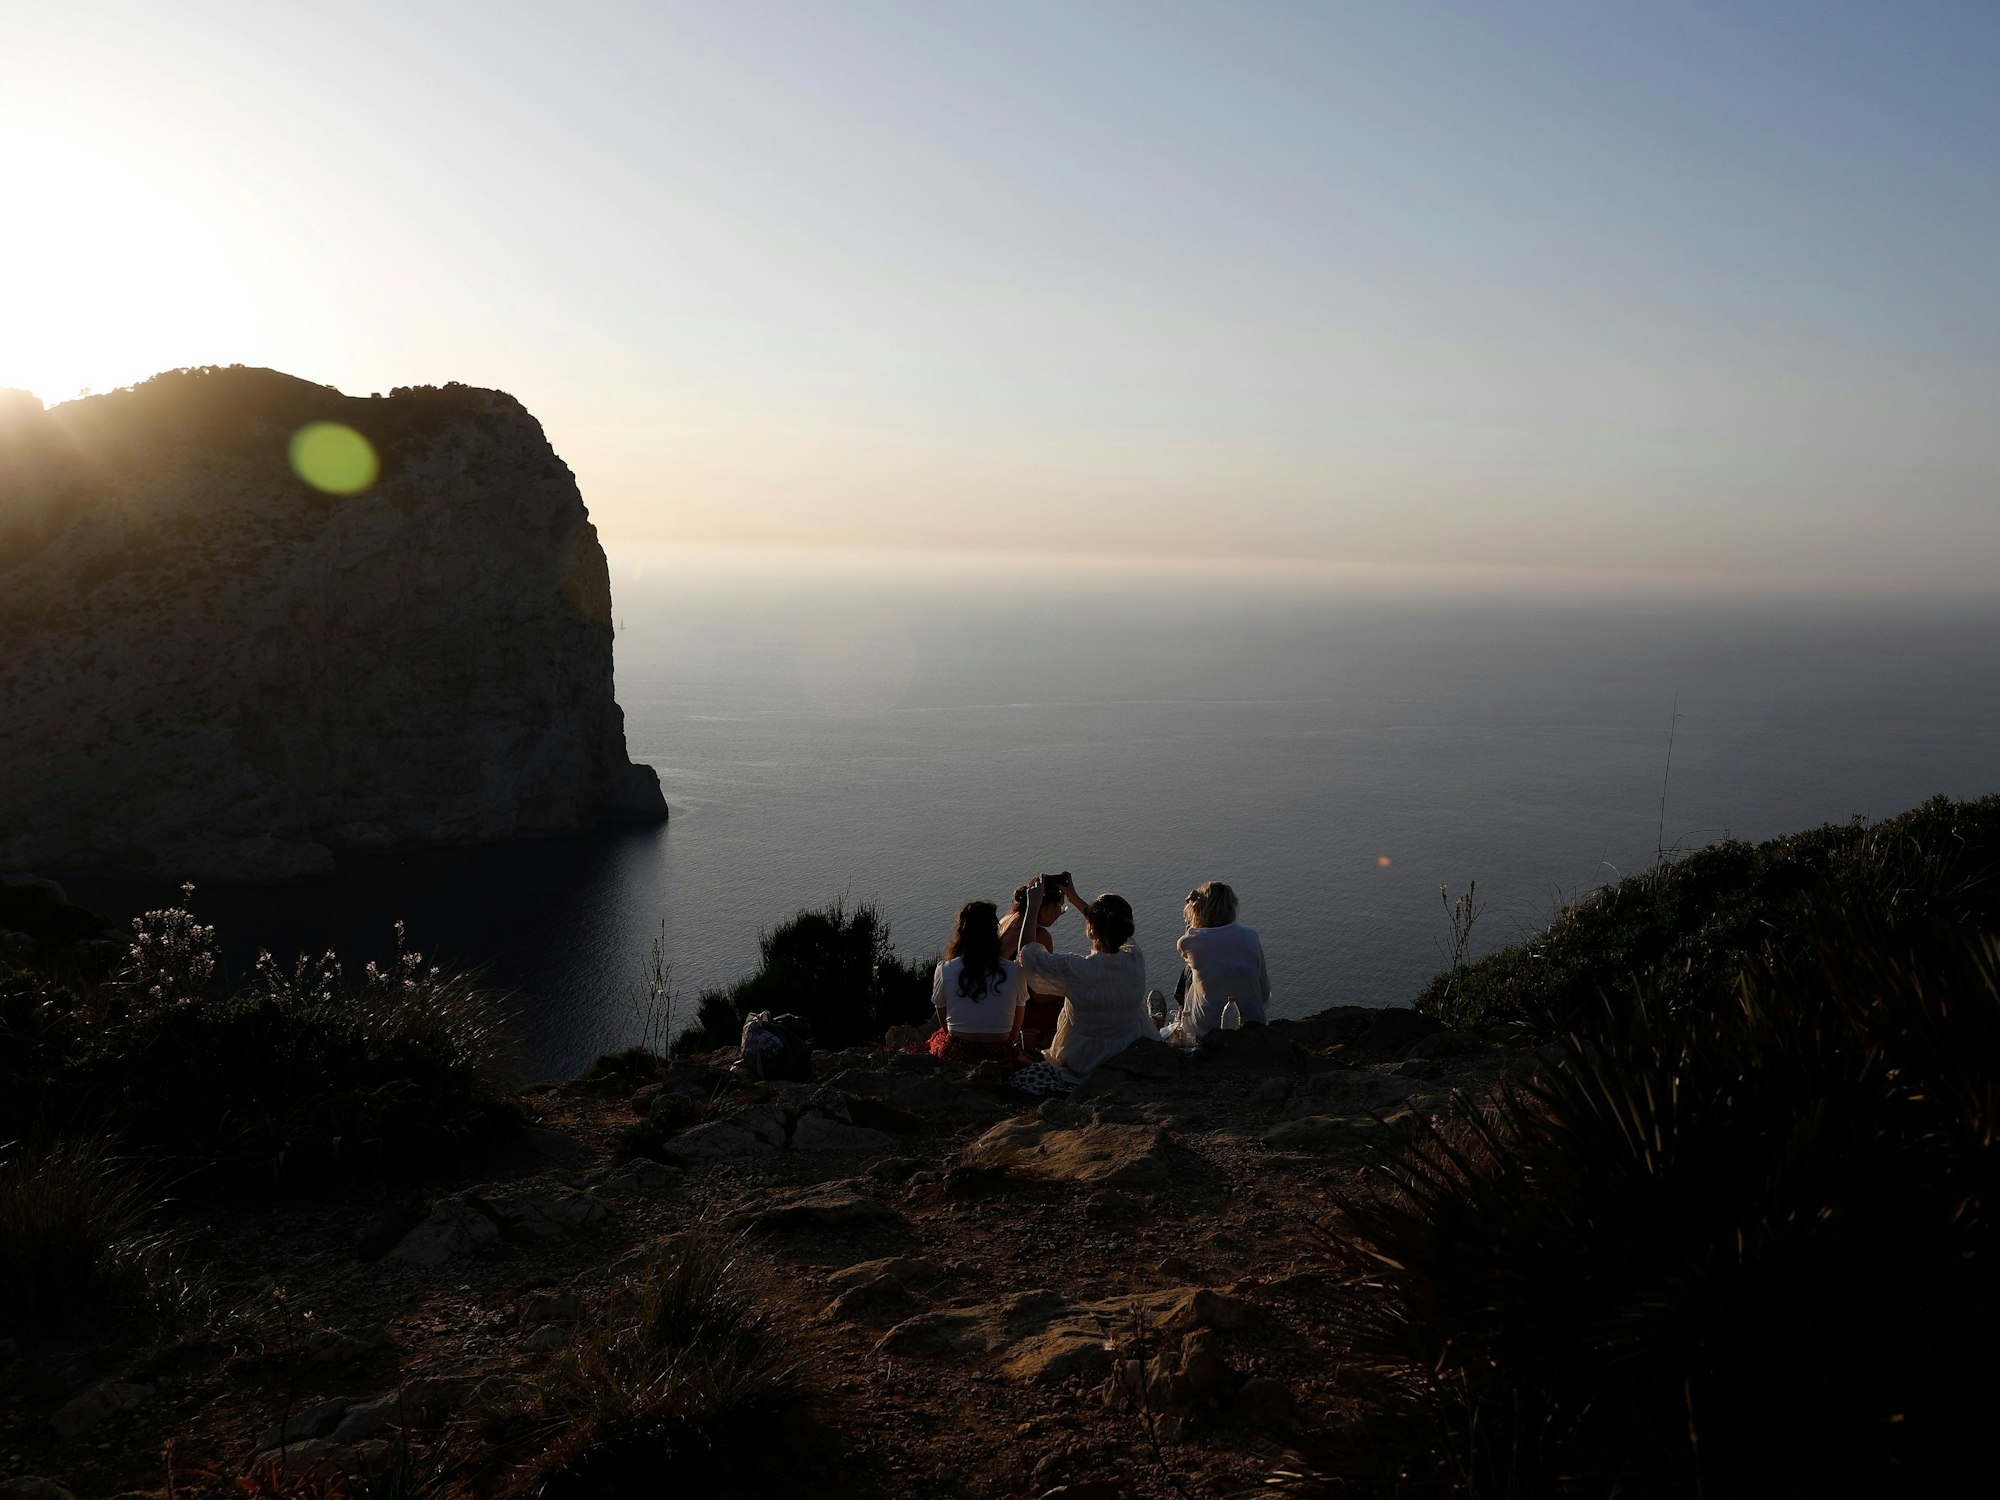 Eine Gruppe von Touristen nimmt einen Drink am Cap de Formentor in der Serra de Tramuntana, dem nördlichsten Teil der Insel Mallorca und einem der touristischsten Orte.